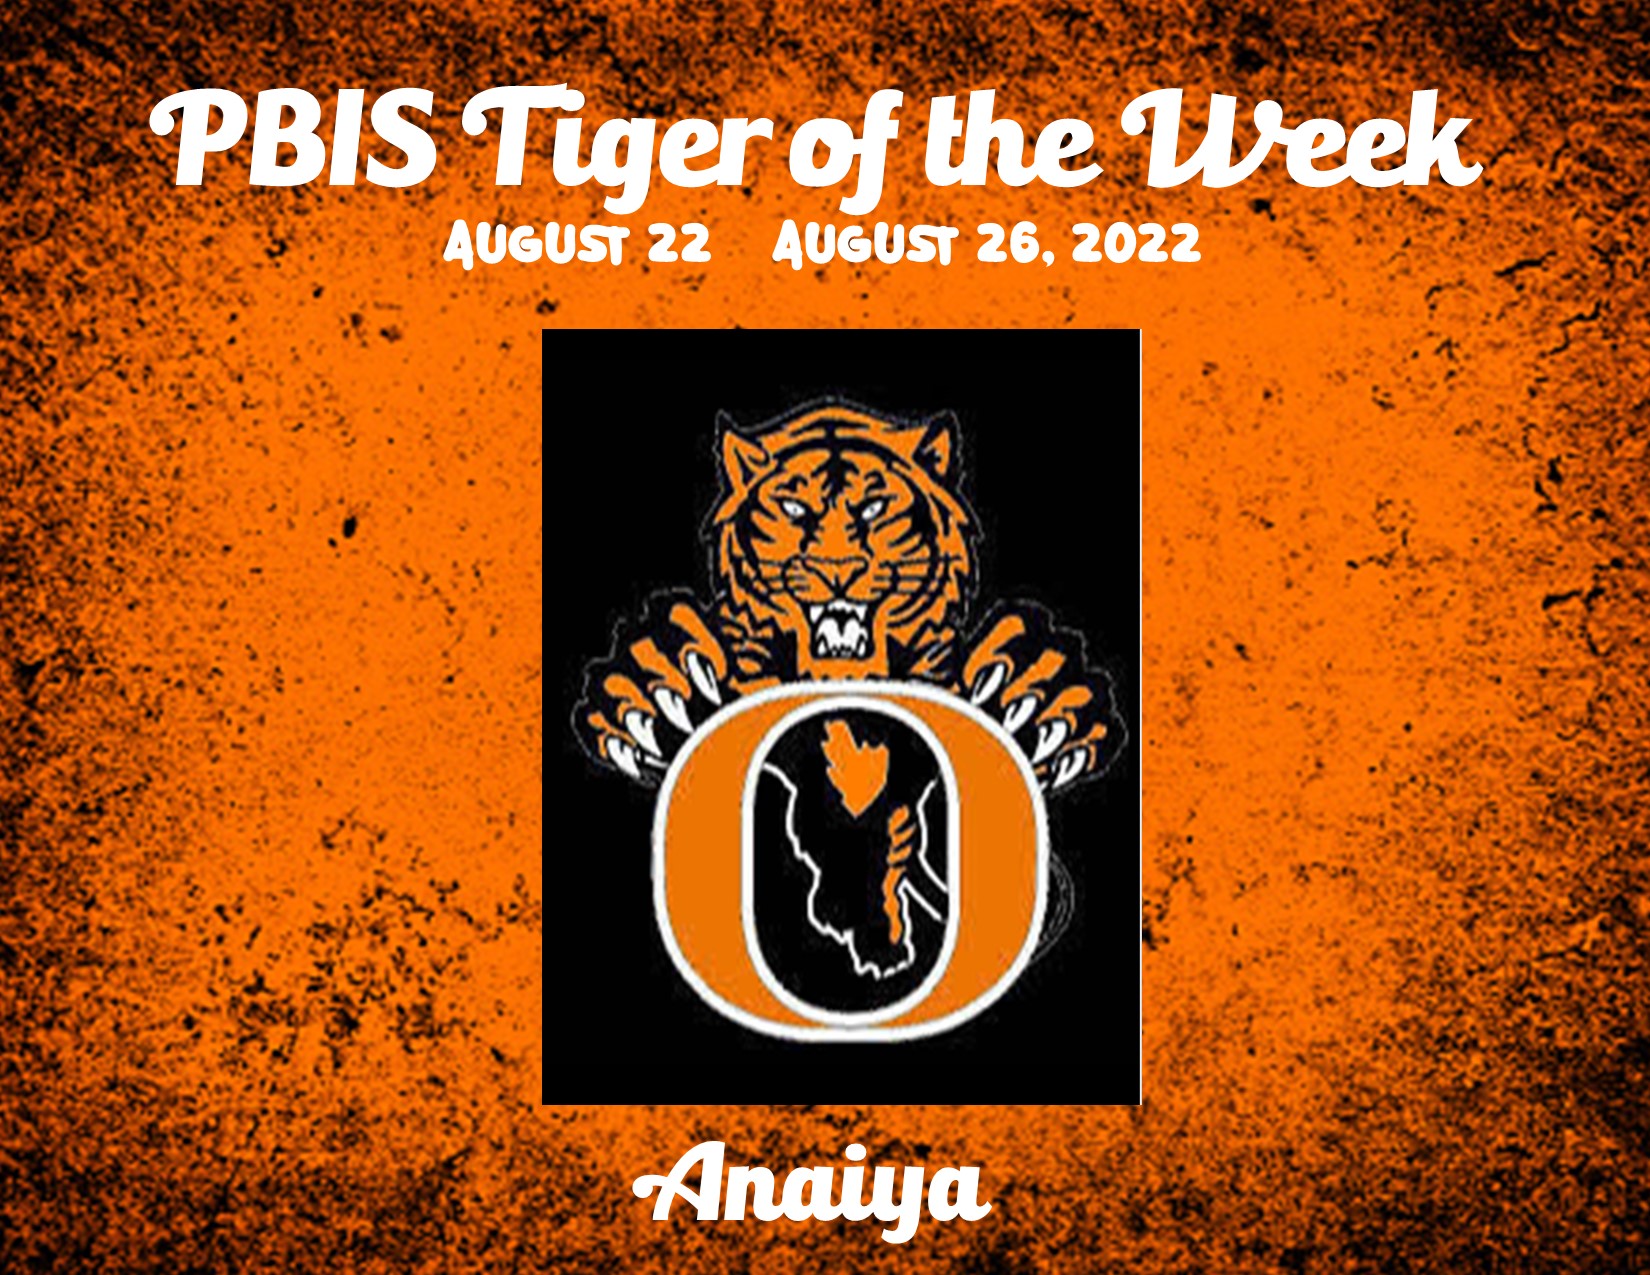 PBIS Tiger of the Week Anaiya